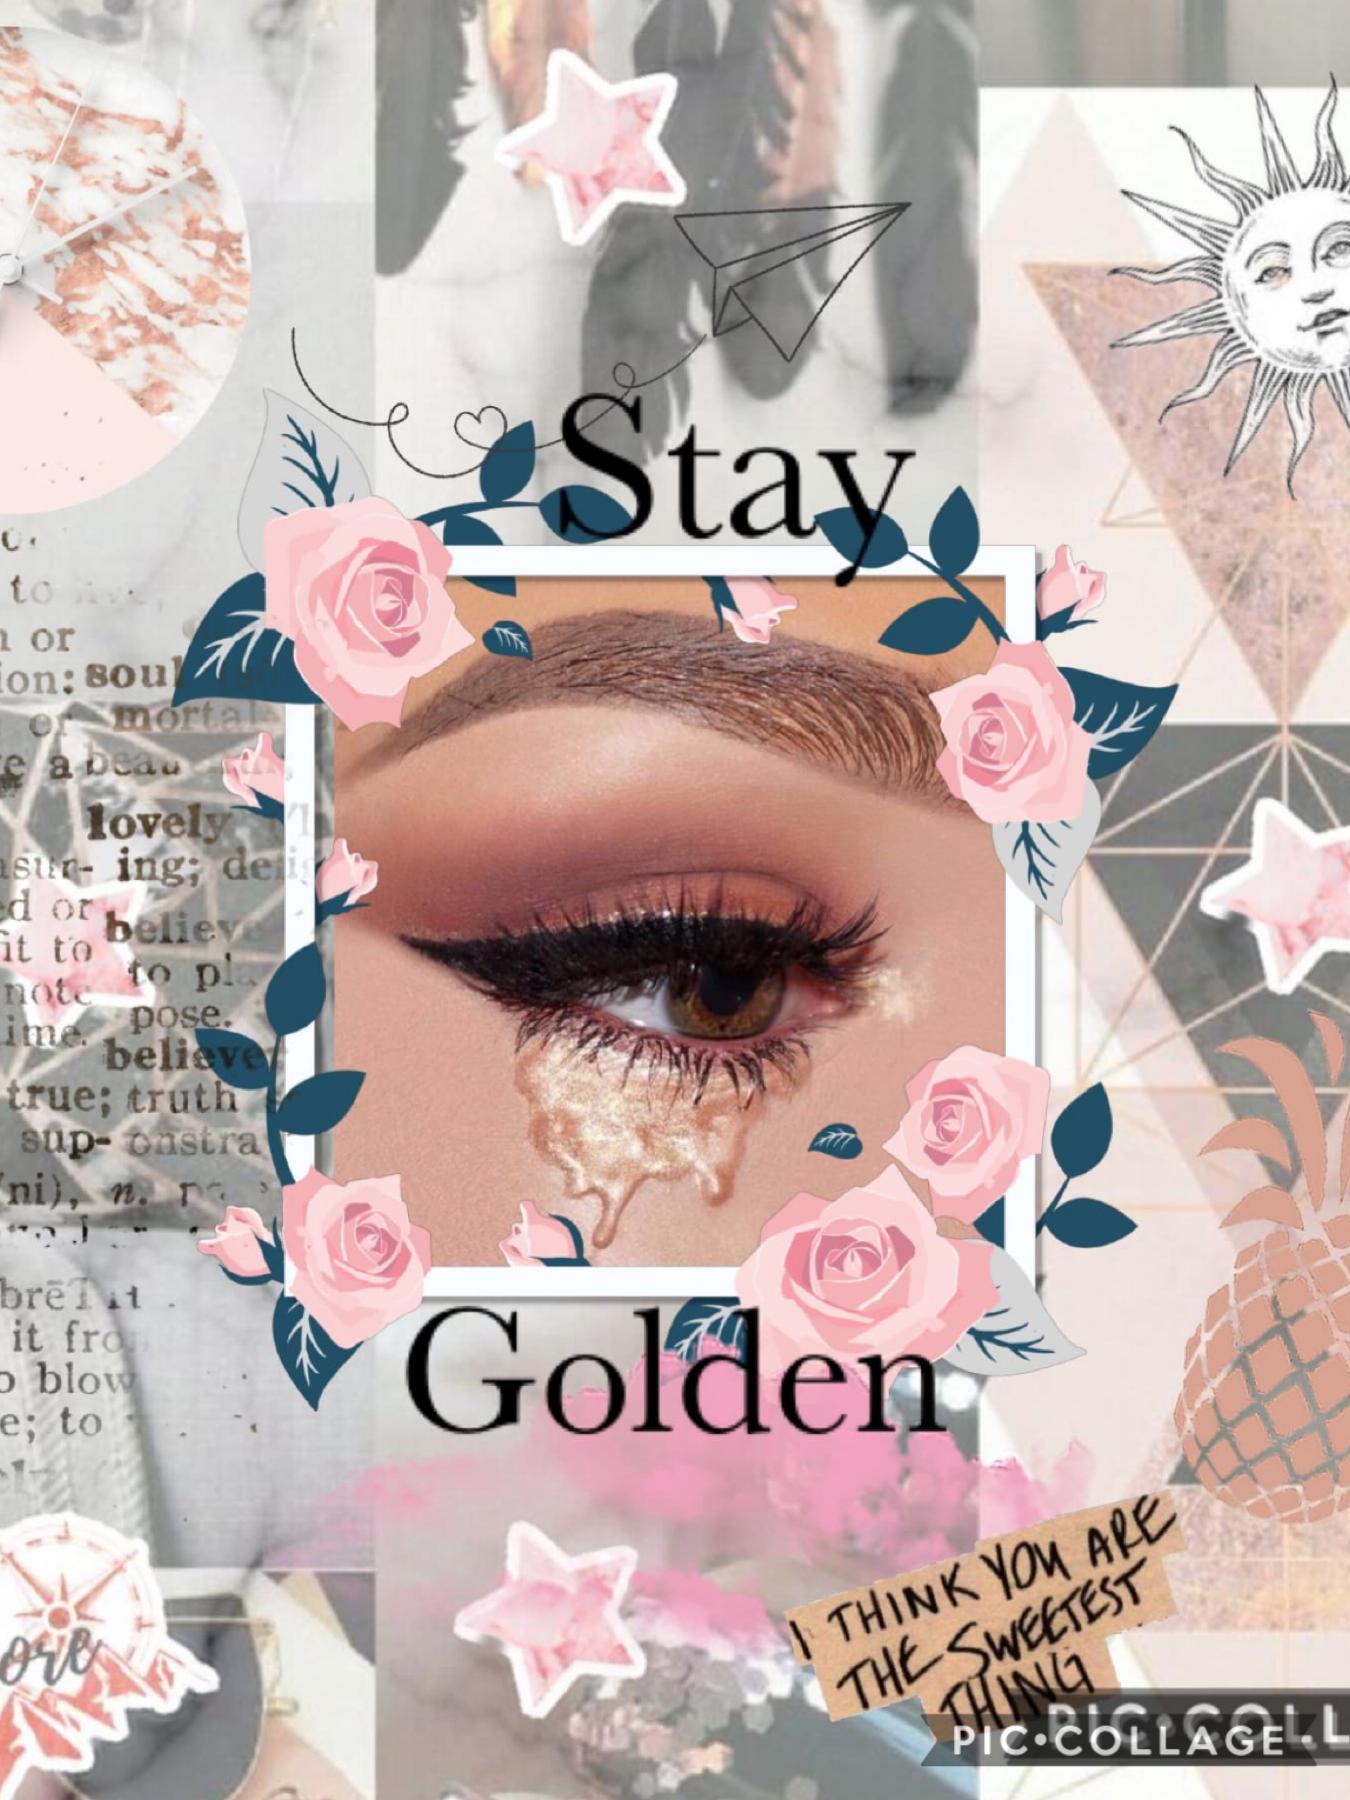 HAY U Stay golden!